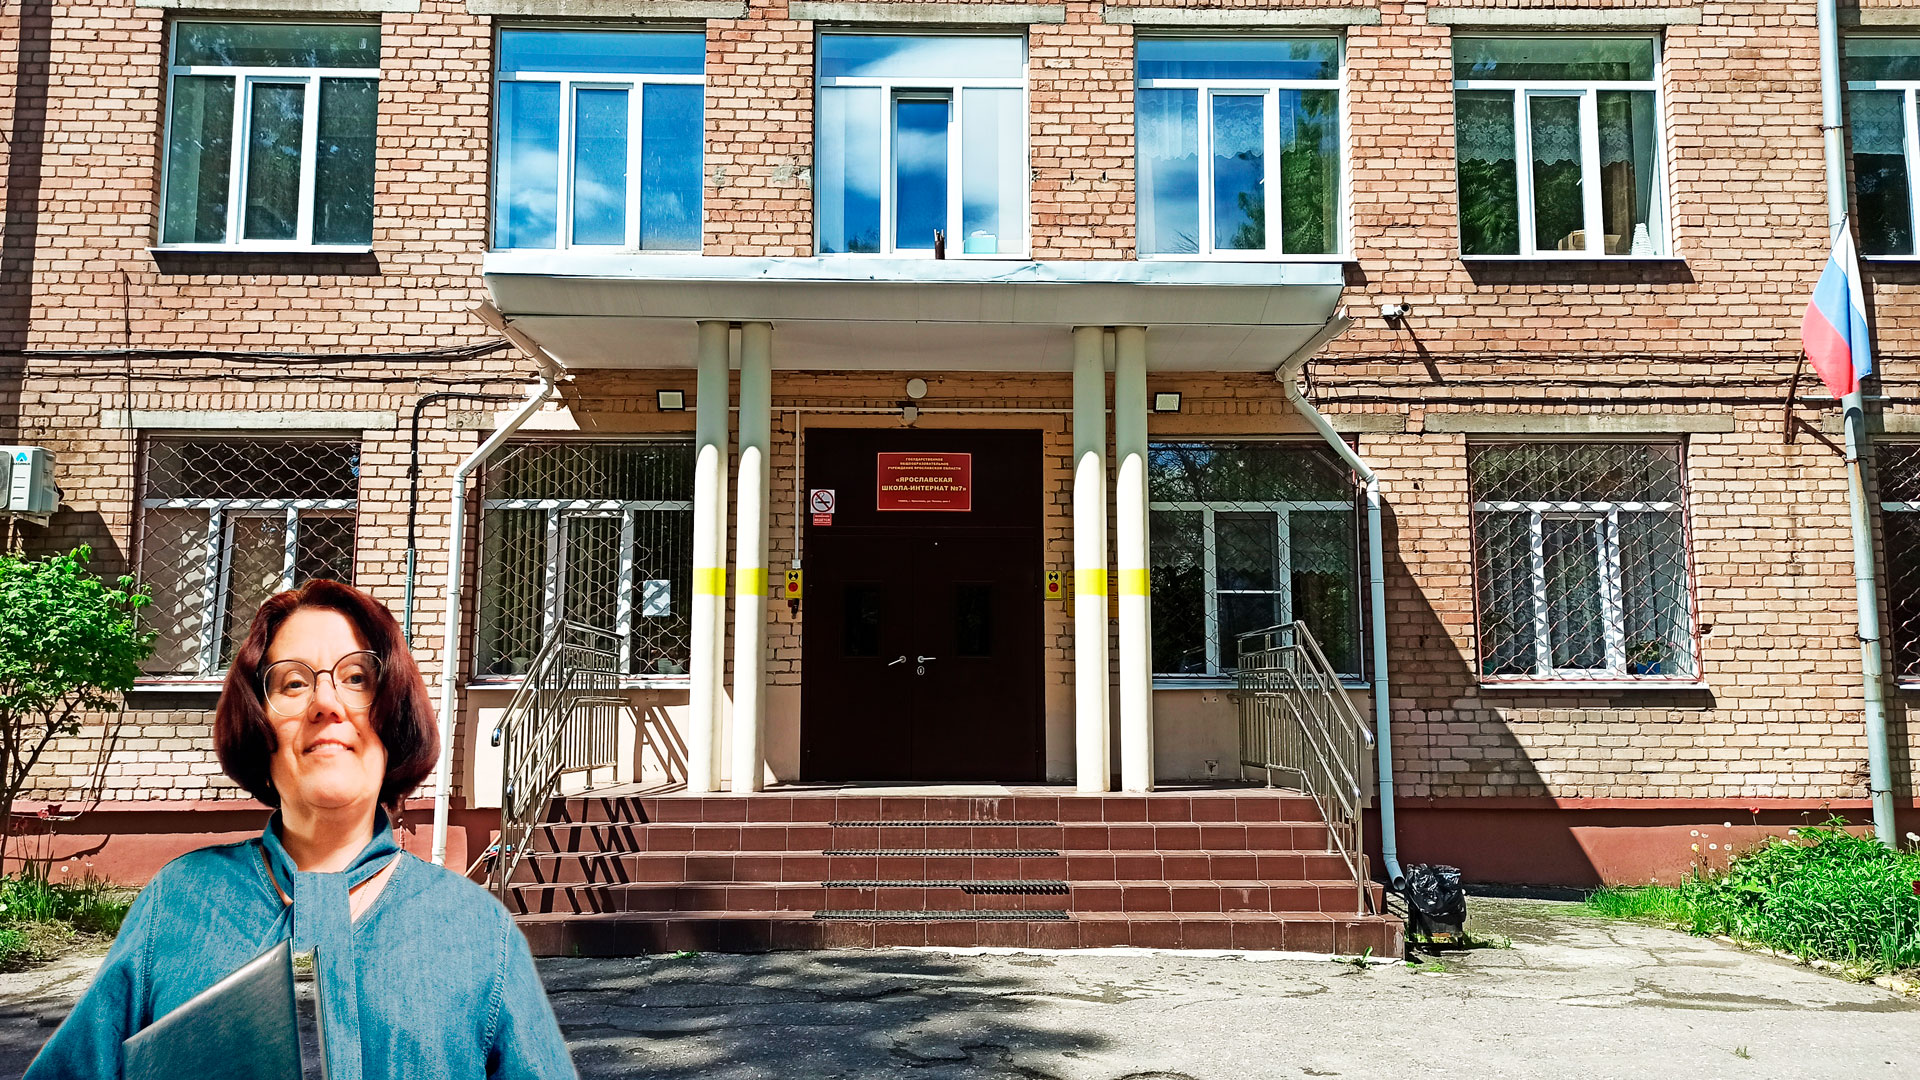 Школа-интернат 7 Ярославль: центральный вход в здание школьной организации.